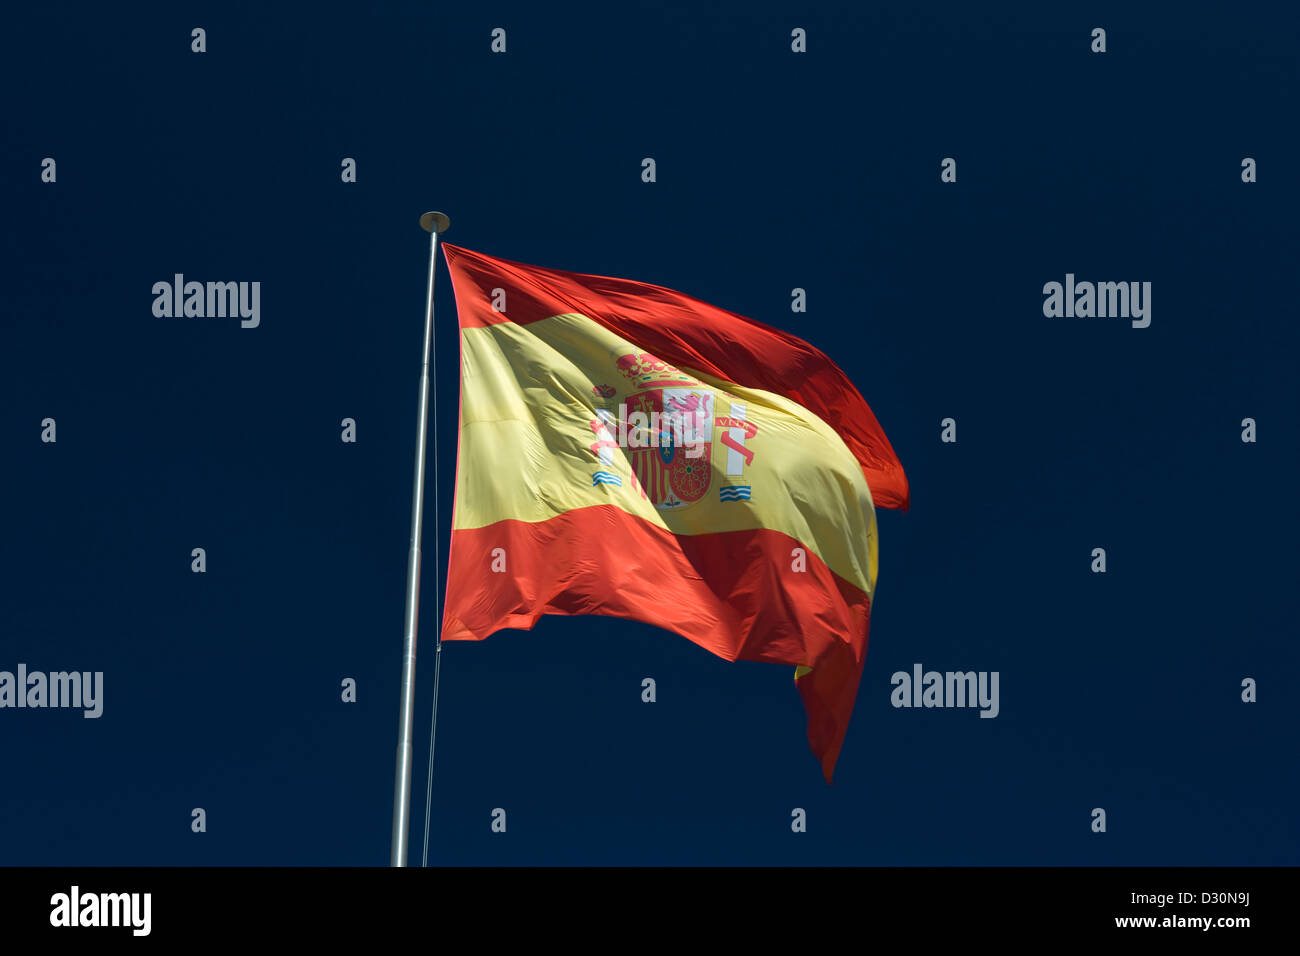 LARGE SPANISH FLAG FLYING ON FLAG POLE WITH BLUE SKY BACKGROUND Stock Photo